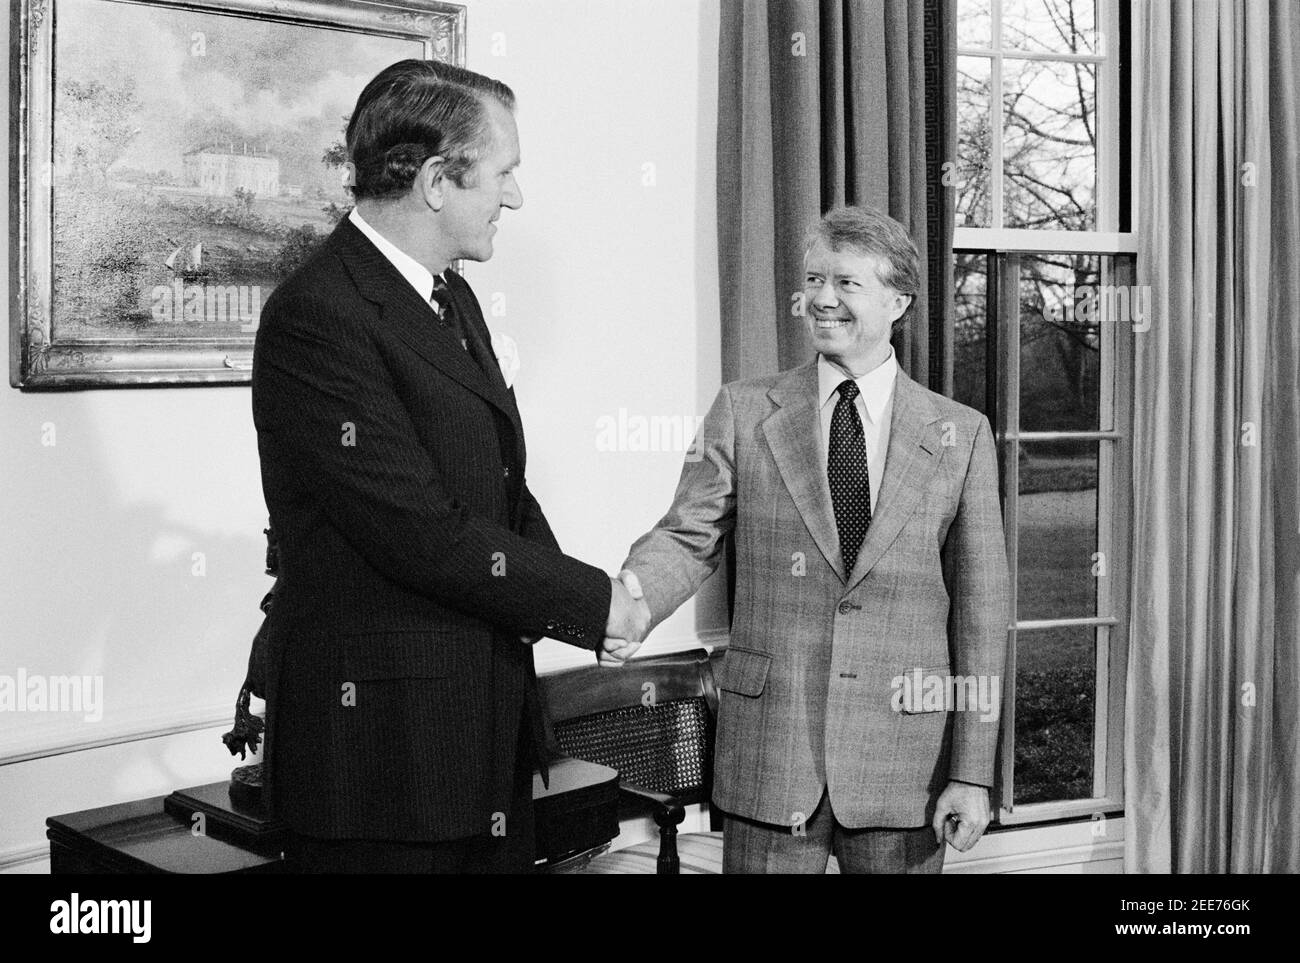 Il primo ministro australiano Malcolm Fraser stringe le mani con il presidente degli Stati Uniti Jimmy carter, Ritratto a mezza lunghezza, Washington, D.C., USA, 1979, 1970-1979, anni 70, Marion S. Trikosko Foto Stock